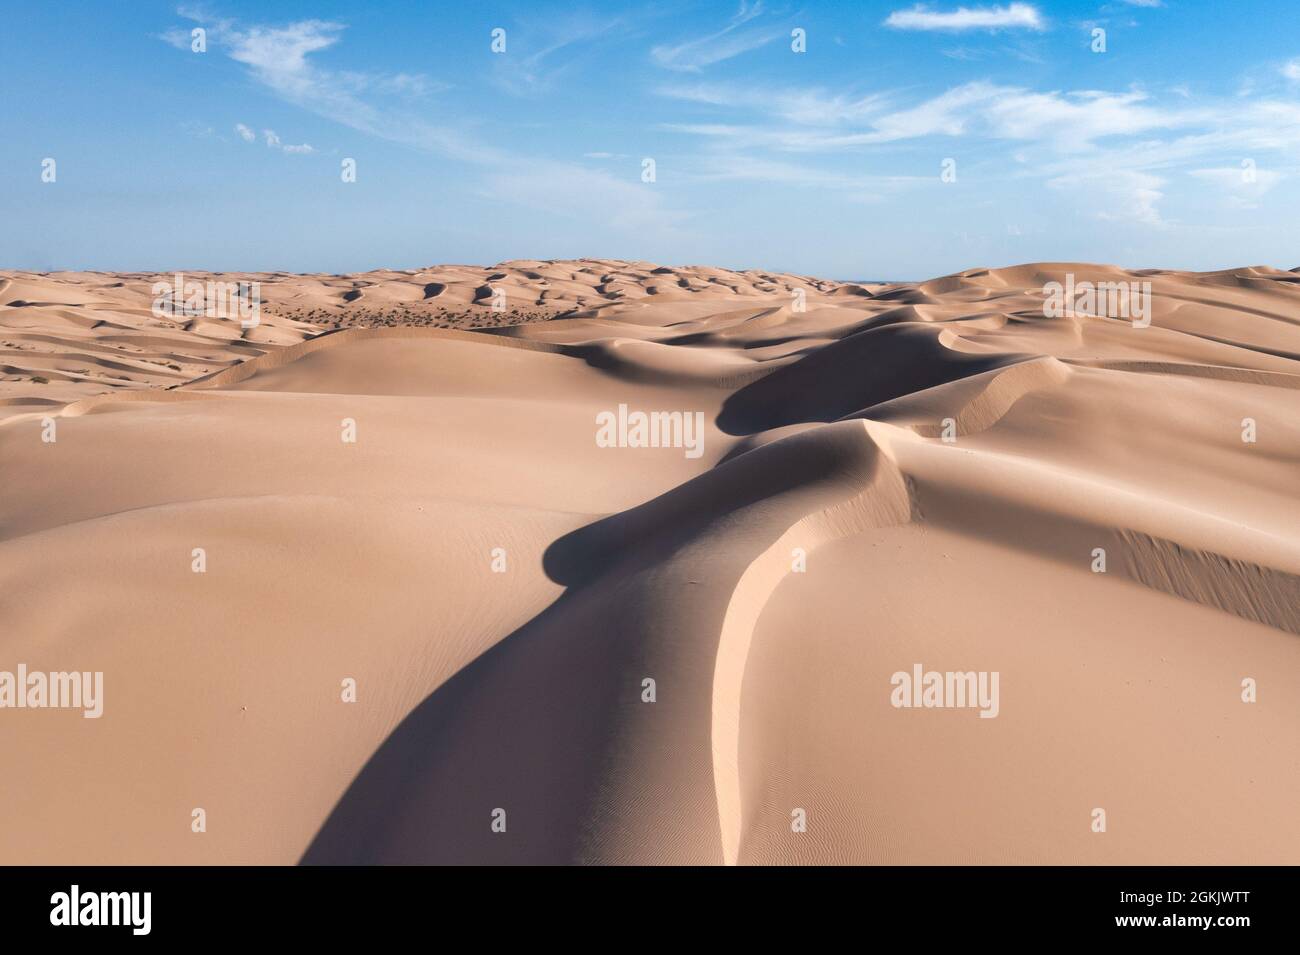 Grandi dune di sabbia con texture, motivi, luce e ombra. Cielo blu con nuvole bianche Foto Stock